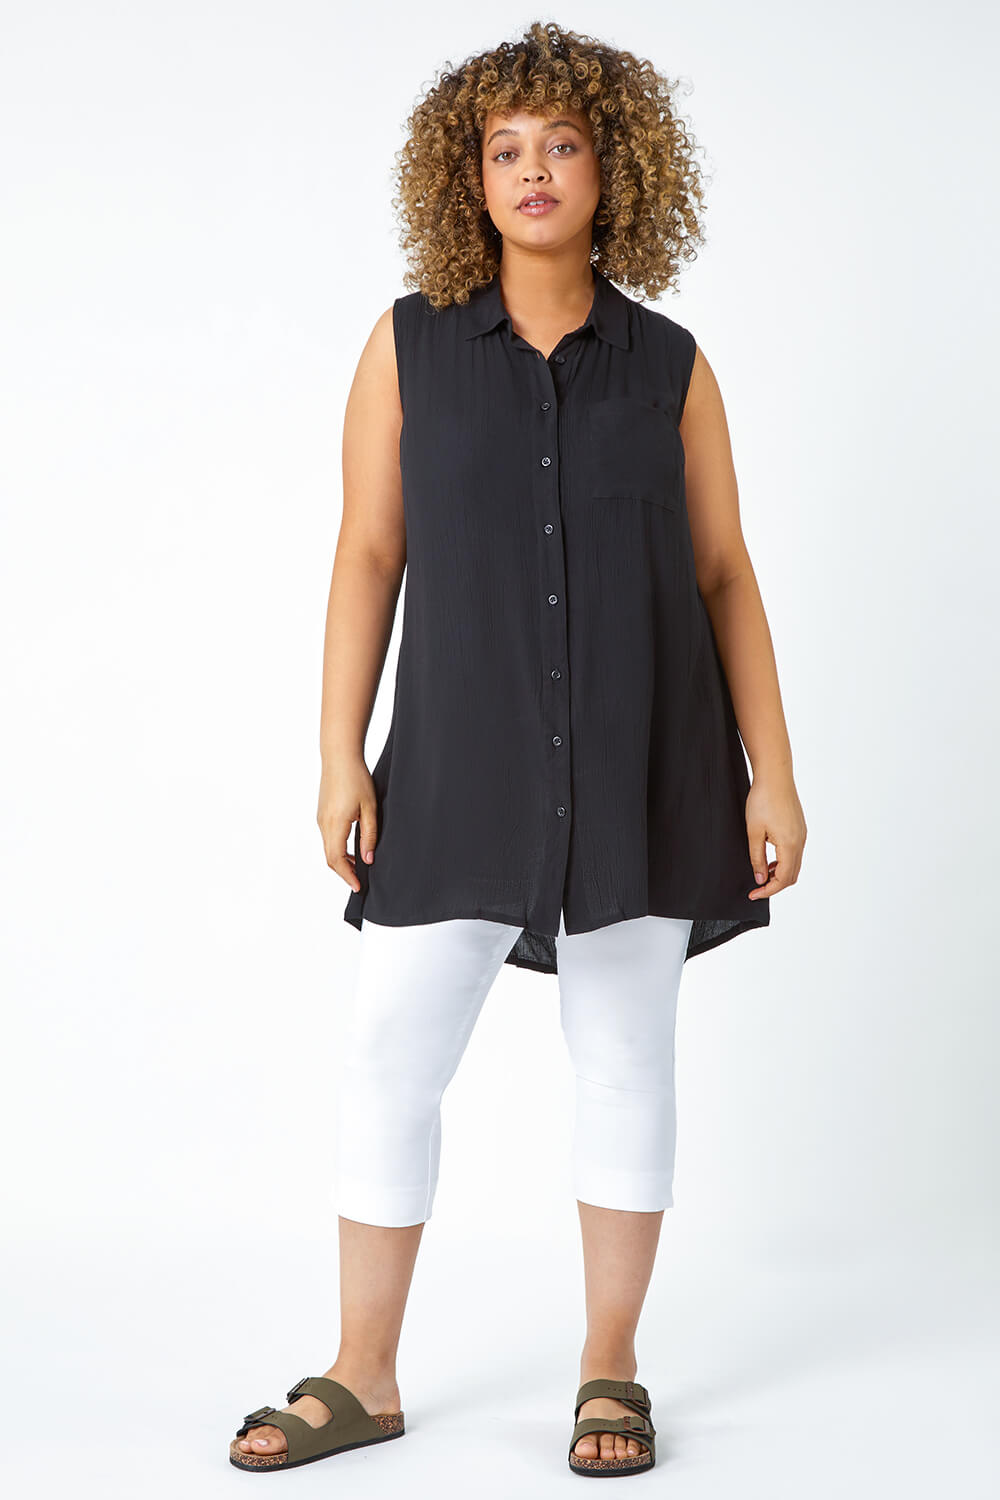 Black Curve Sleeveless Longline Tunic Shirt, Image 6 of 6